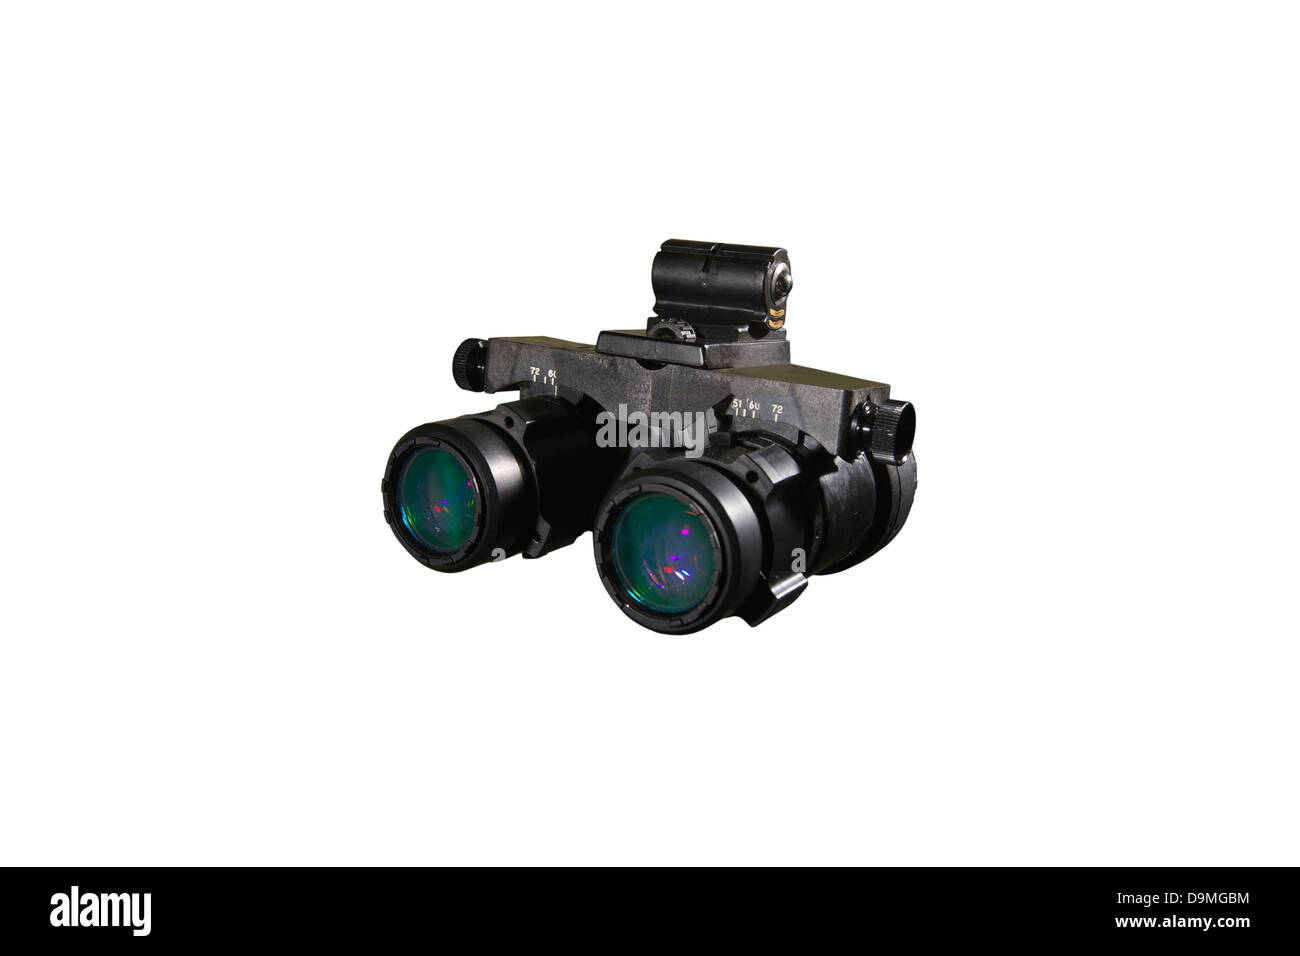 AN/AVS-6 Nachtsicht Brille vom Militär genutzt Stockfotografie - Alamy